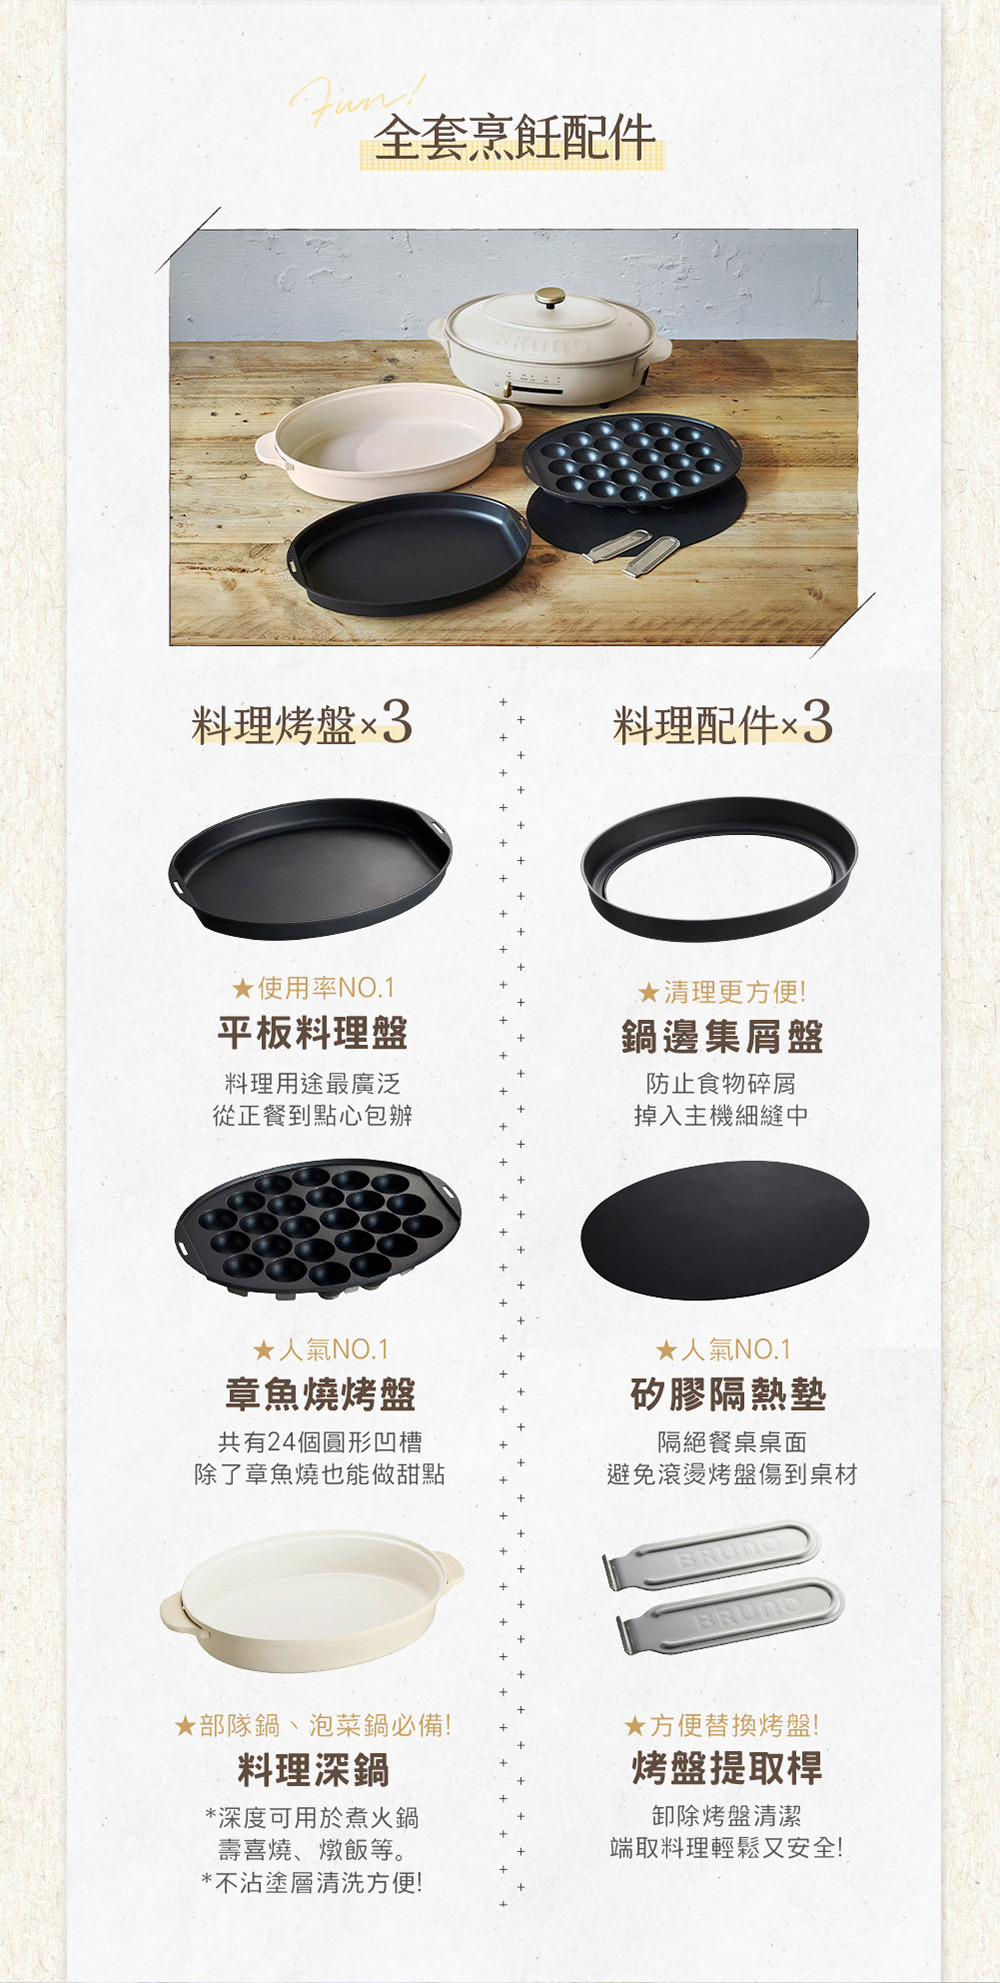 BRUNO橢圓形電烤盤 的全套烹飪配件展示。